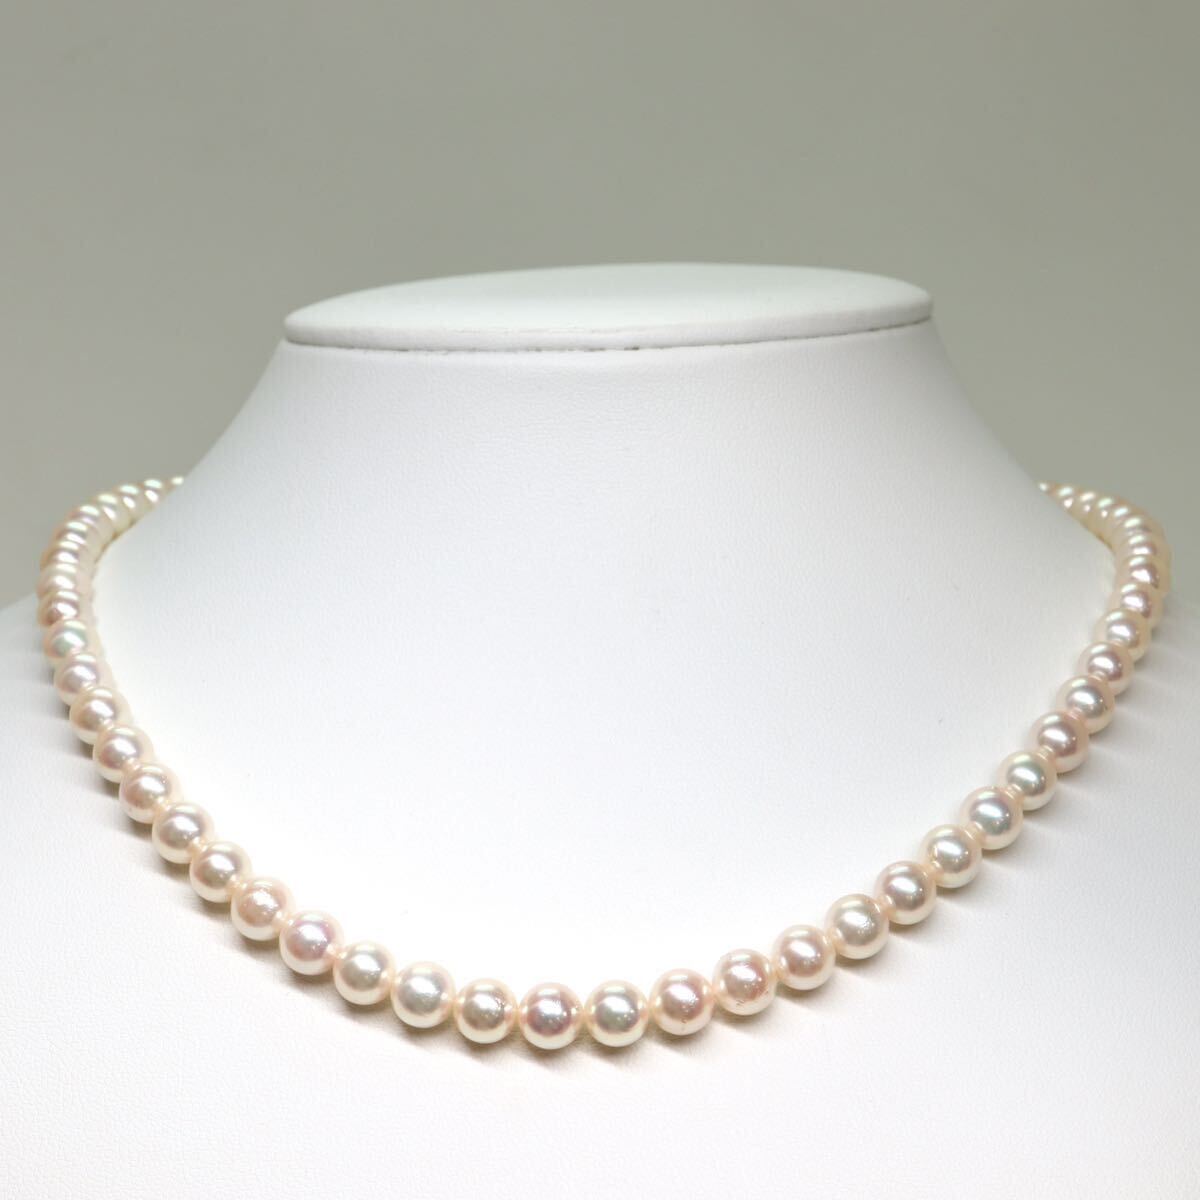 テリ良し!!《アコヤ本真珠ネックレス》A 約6.5-7.0mm珠 29.9g 約42.5cm pearl necklace ジュエリー jewelry CA0/DC0の画像2